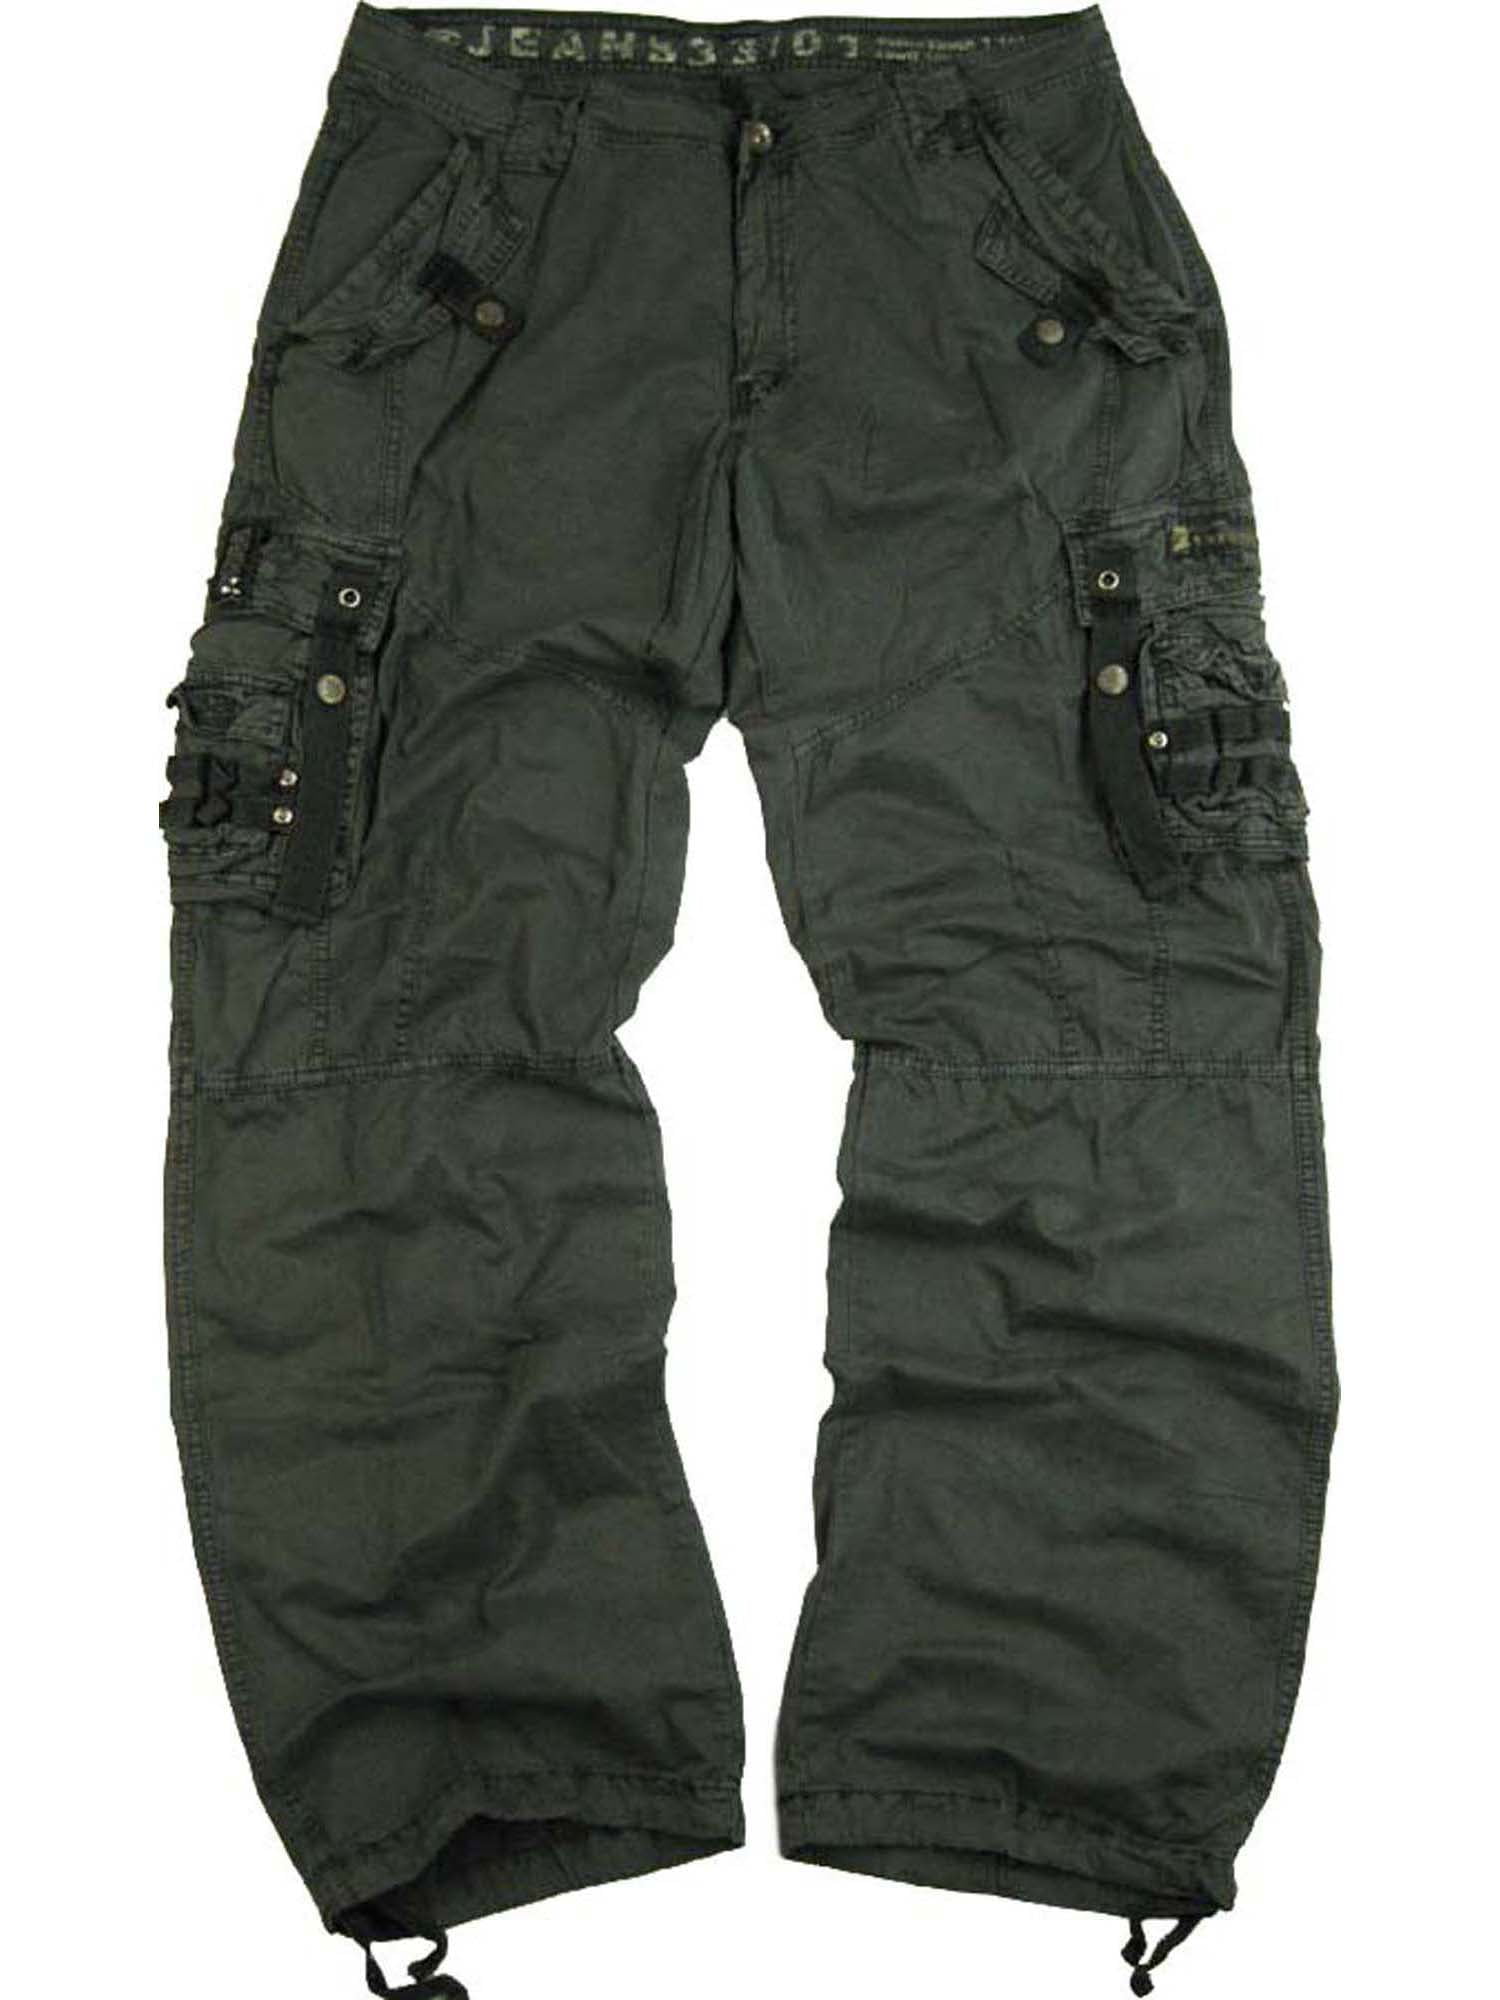 Men's Military Cargo Pants 32x32 D.Grey #12211 - Walmart.com